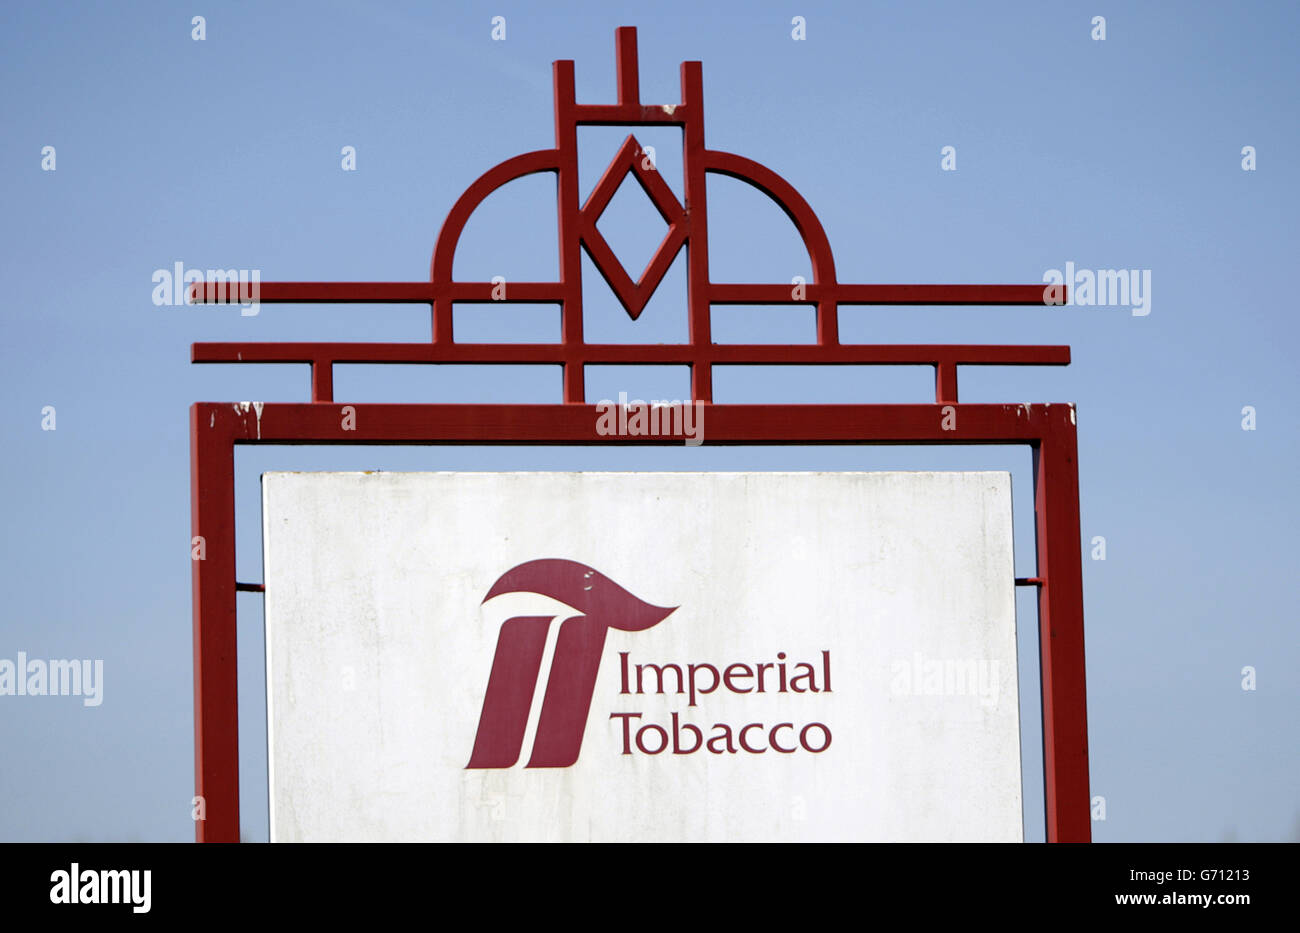 Une vue d'ensemble de l'usine Imperial Tobacco de Nottingham, après que l'entreprise a annoncé son intention de fermer l'usine avec la perte de jusqu'à 540 emplois. Banque D'Images